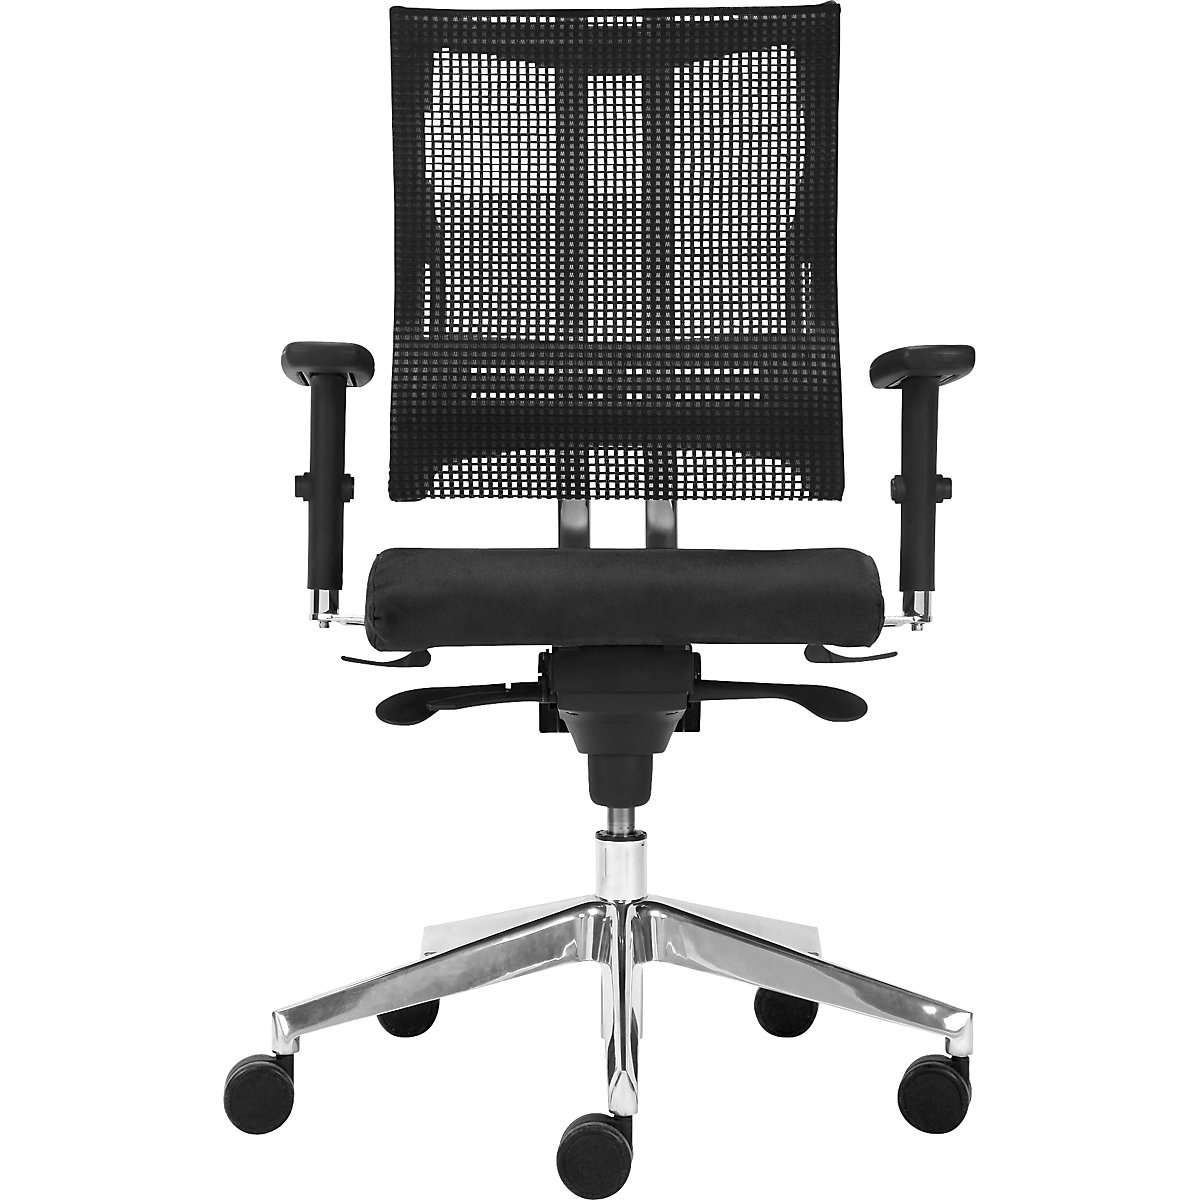 Silla giratoria de oficina NET-MOTION, con respaldo reticulado y apoyo lumbar, respaldo y asiento negros, armazón cromado